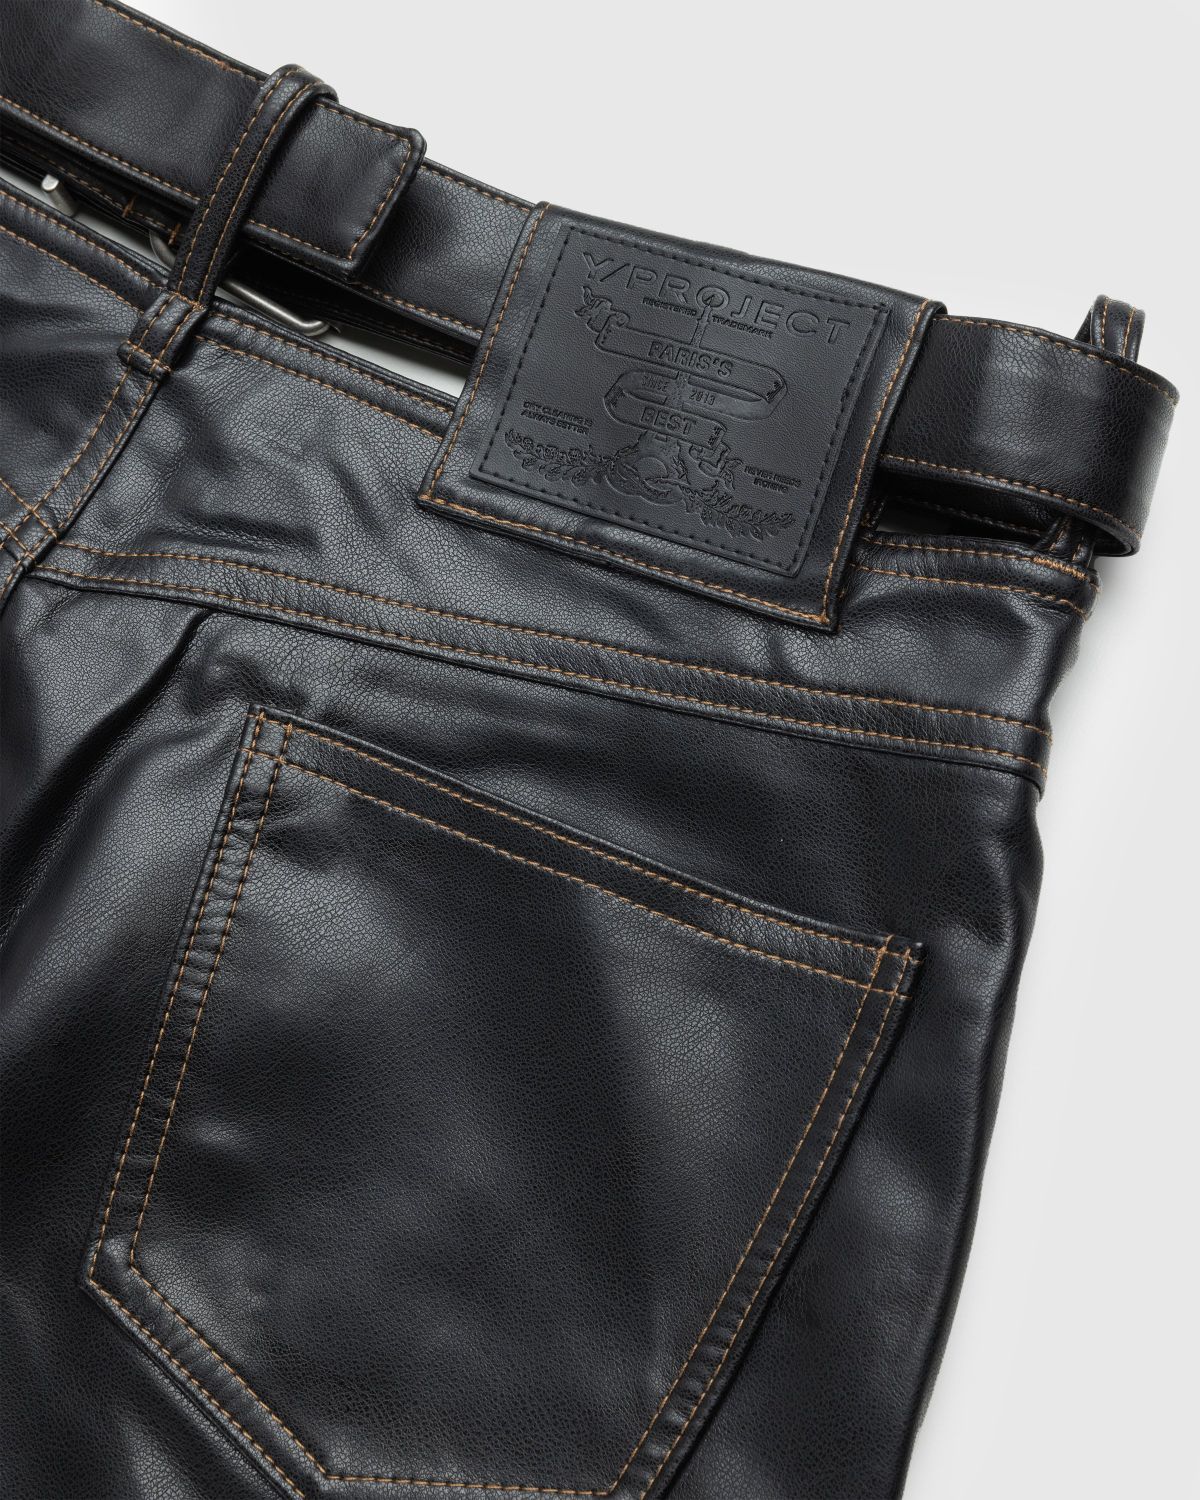 Y/Project – Y Belt Leather Pants Black - Pants - Black - Image 6